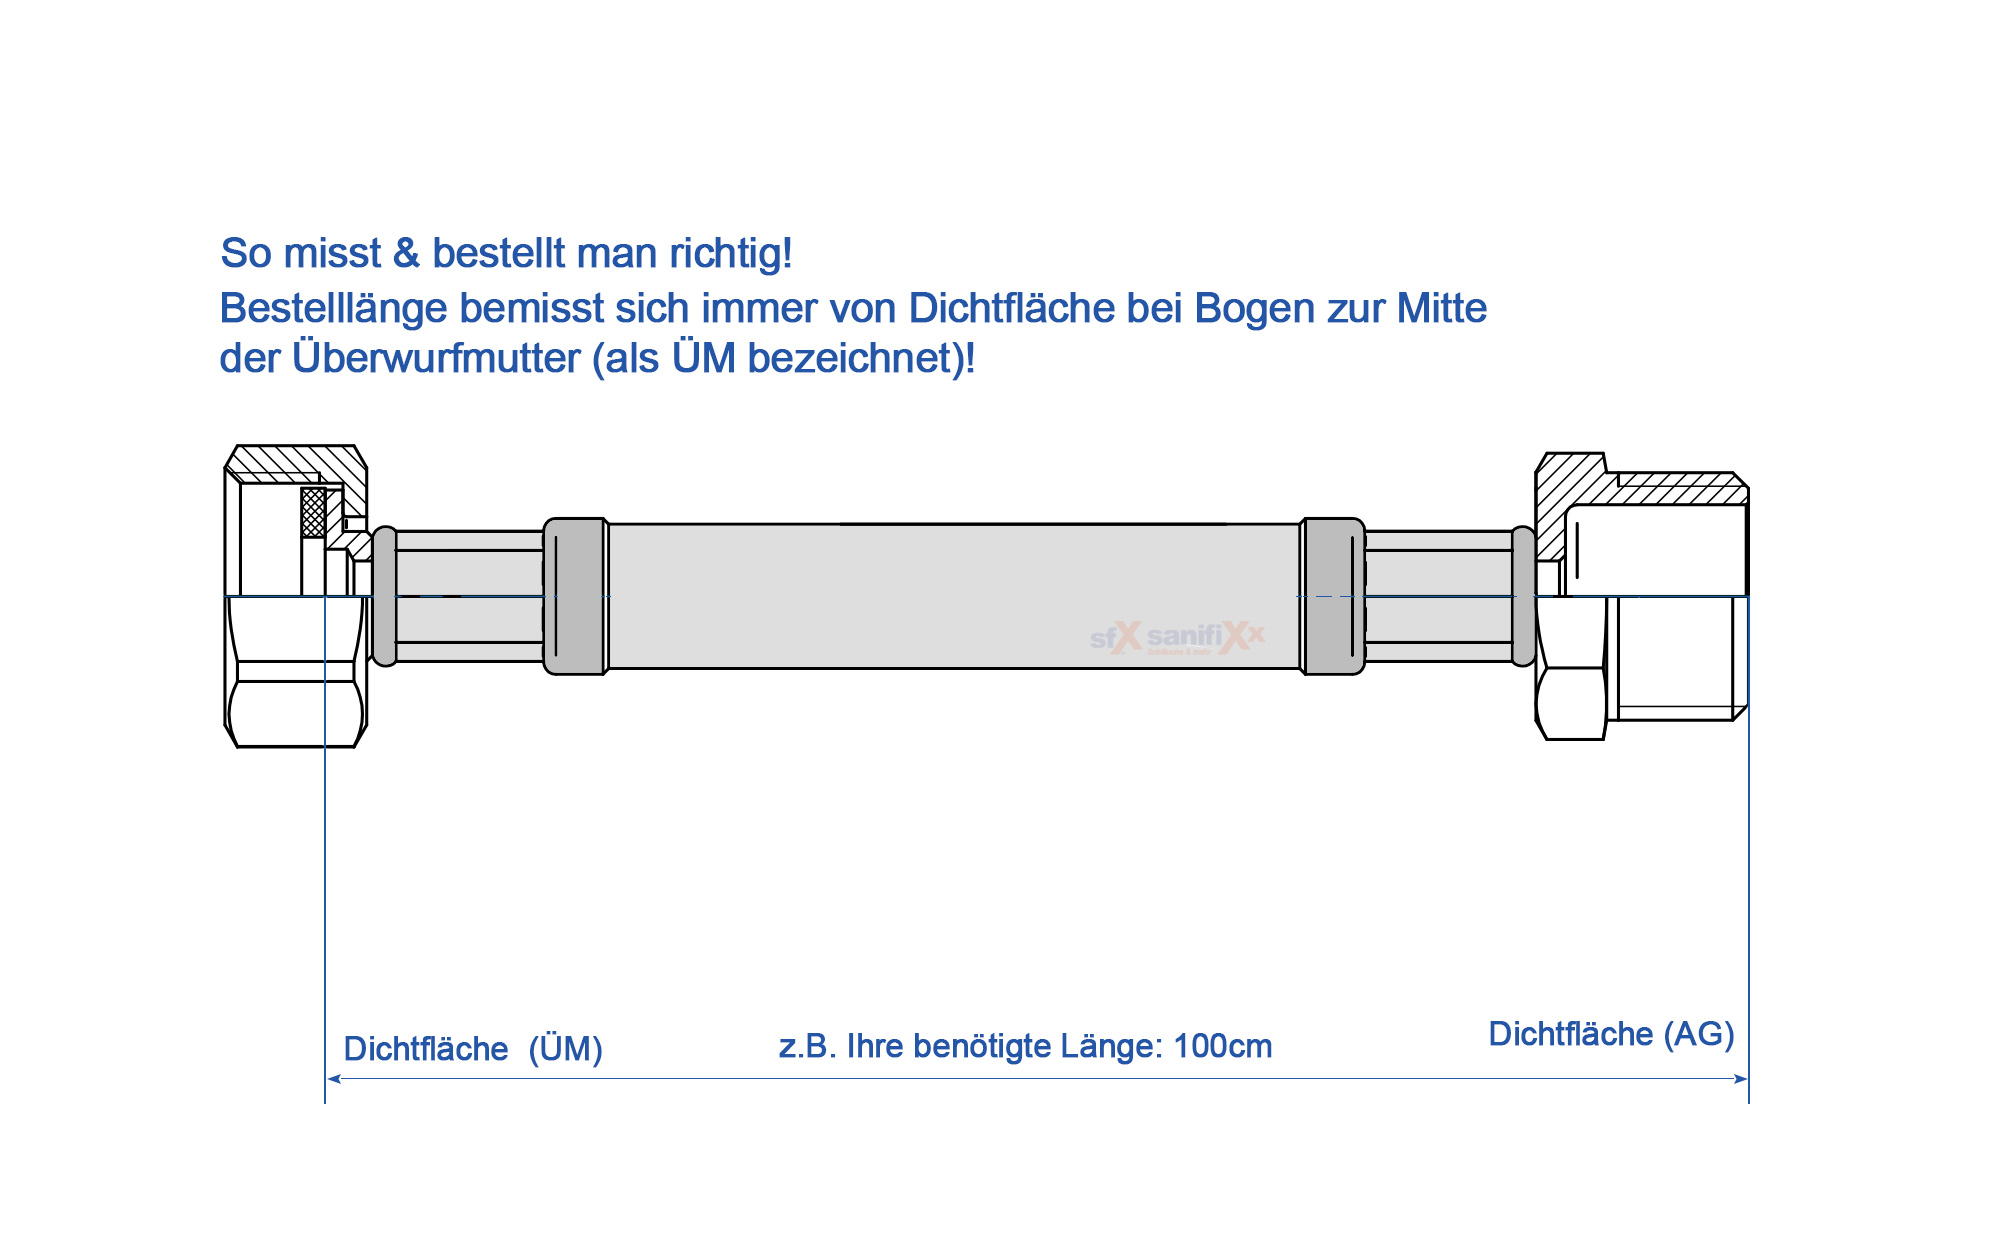 SFX® Panzerschlauch DN50 - ÜM 2 x AG 2 - 4 Bar - 90°C - Sanitär -  Trinkwasser - Edelstahl Flexschlauch 2 Zoll